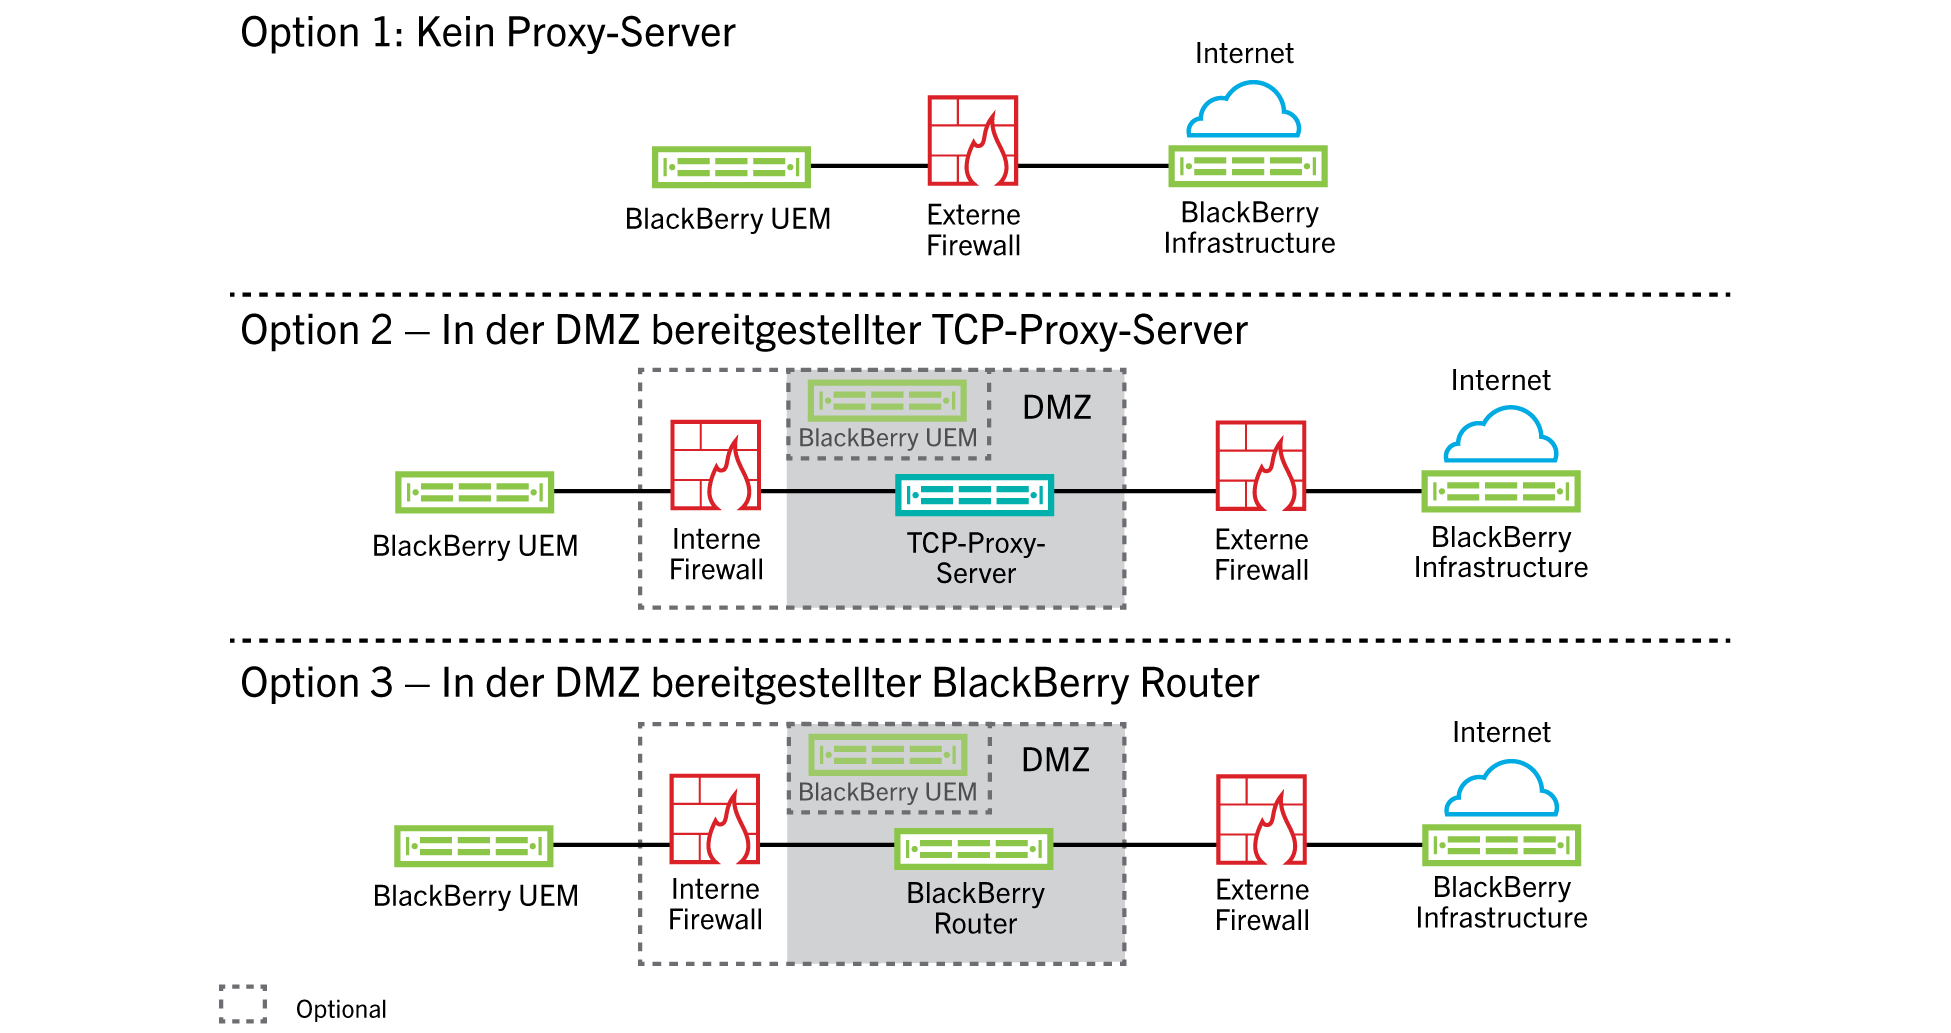 Diese Abbildung zeigt die Konfiguration von BlackBerry UEM ohne Verwendung eines Proxyservers, einen TCP-Proxyserver in der DMZ und einen BlackBerry Router in der DMZ.